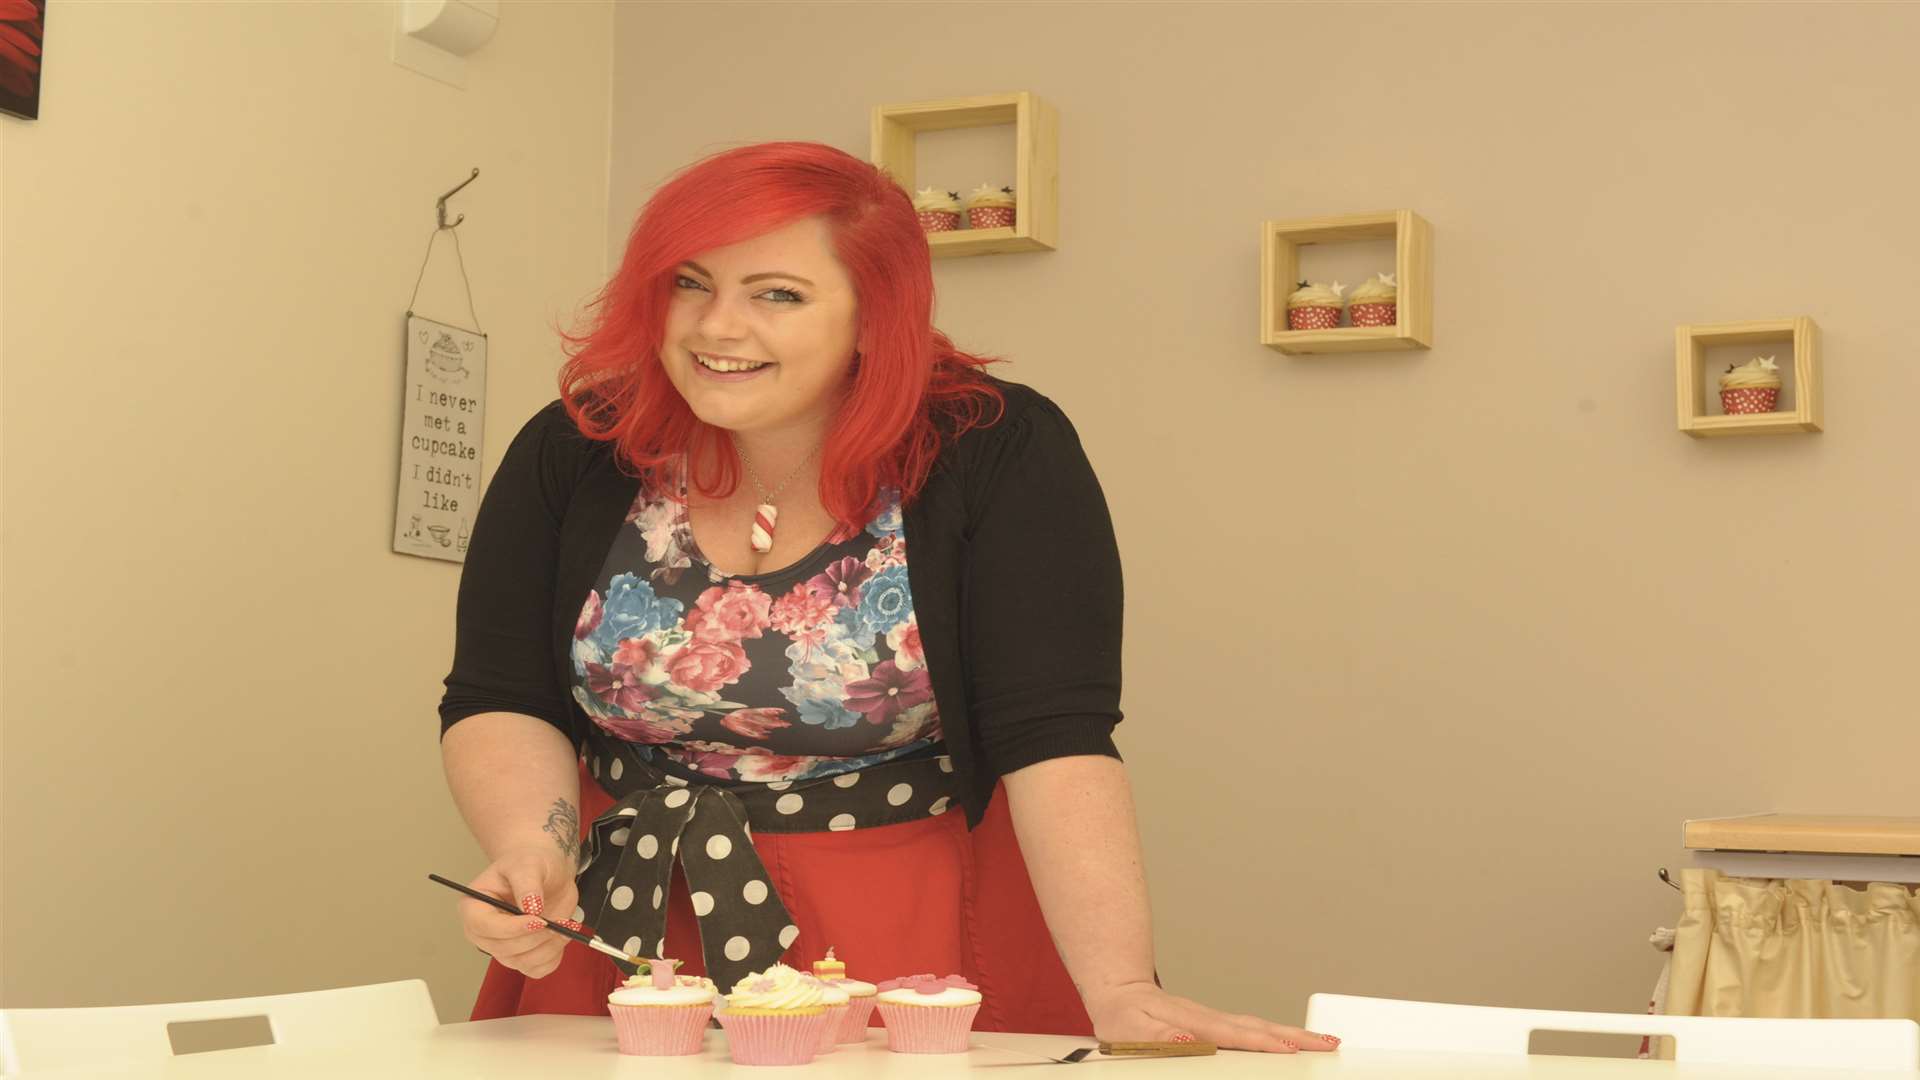 Britt Whyatt's custom design cake company has gone from strength to strength